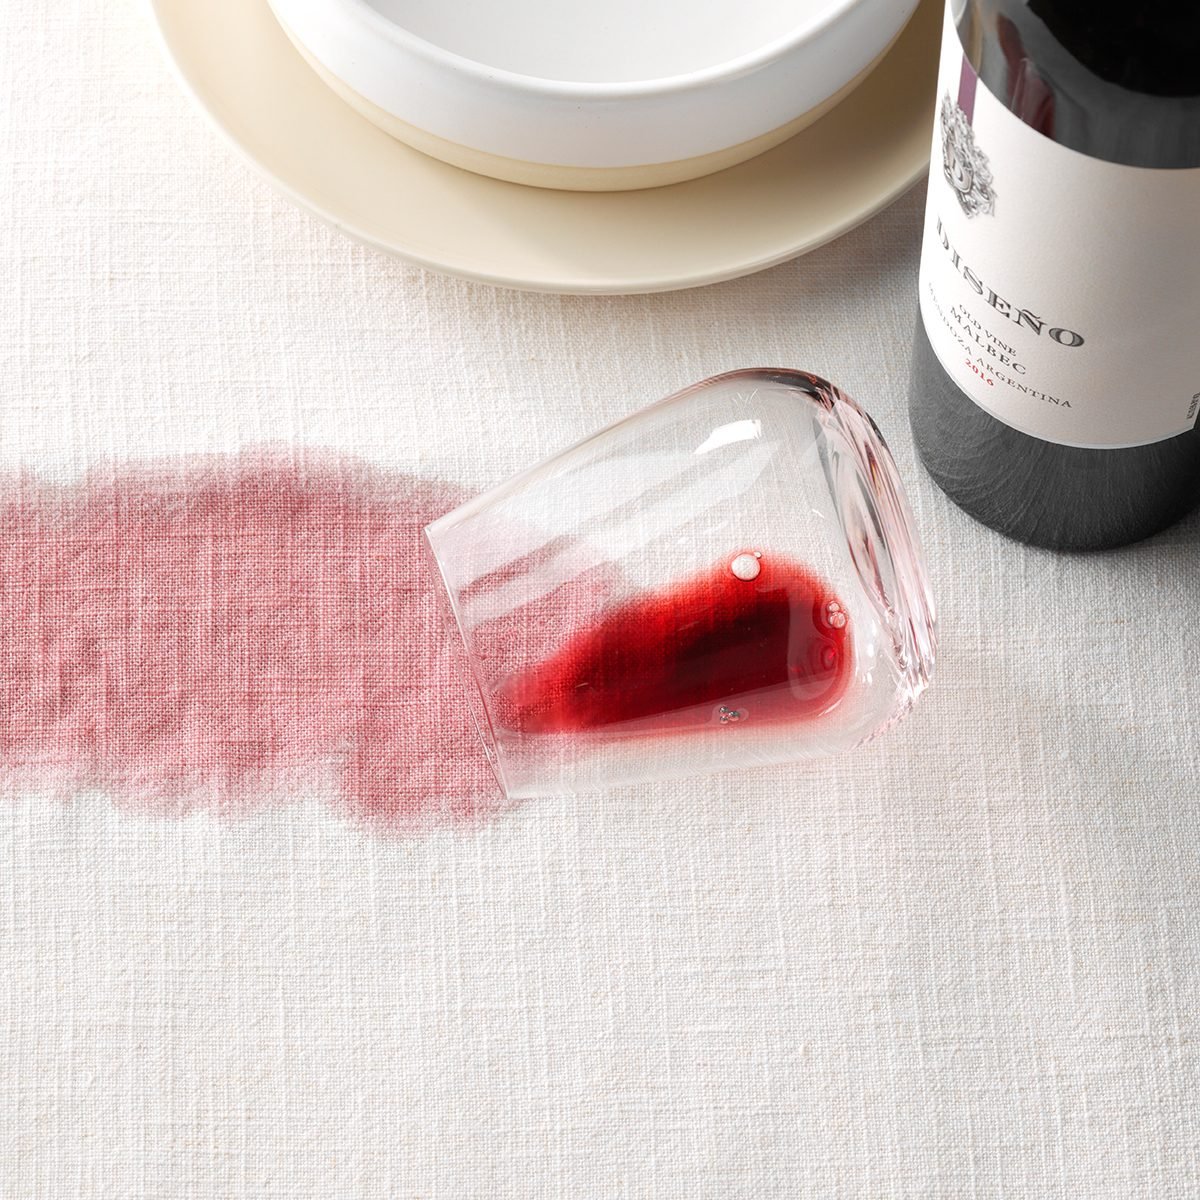 弄脏的桌布;裂红葡萄酒;酒杯溢出